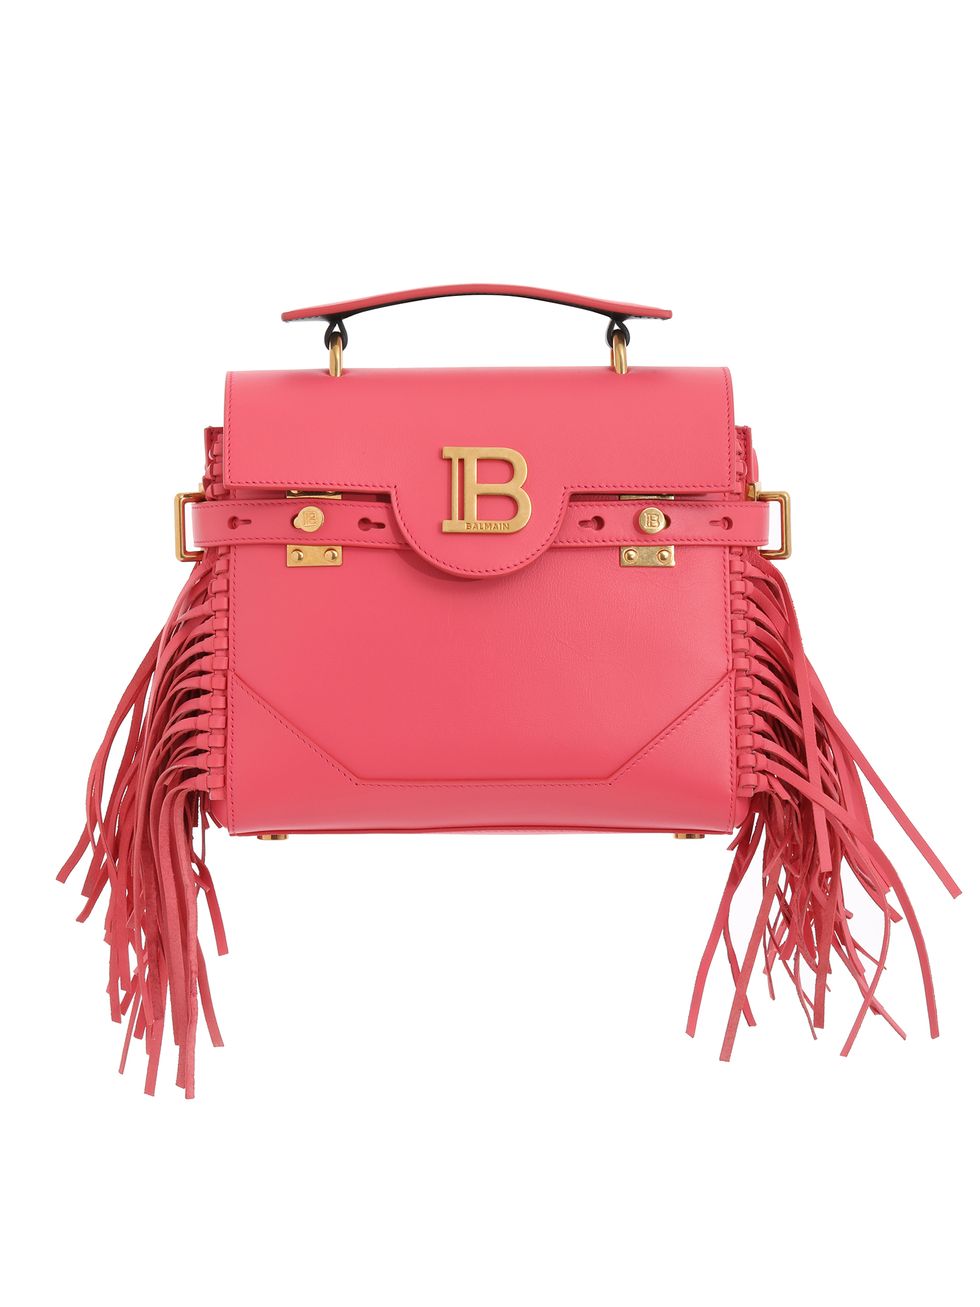 Handbag, Bag, Pink, Red, Fashion accessory, Shoulder bag, Leather, Magenta, Kelly bag, Material property, 